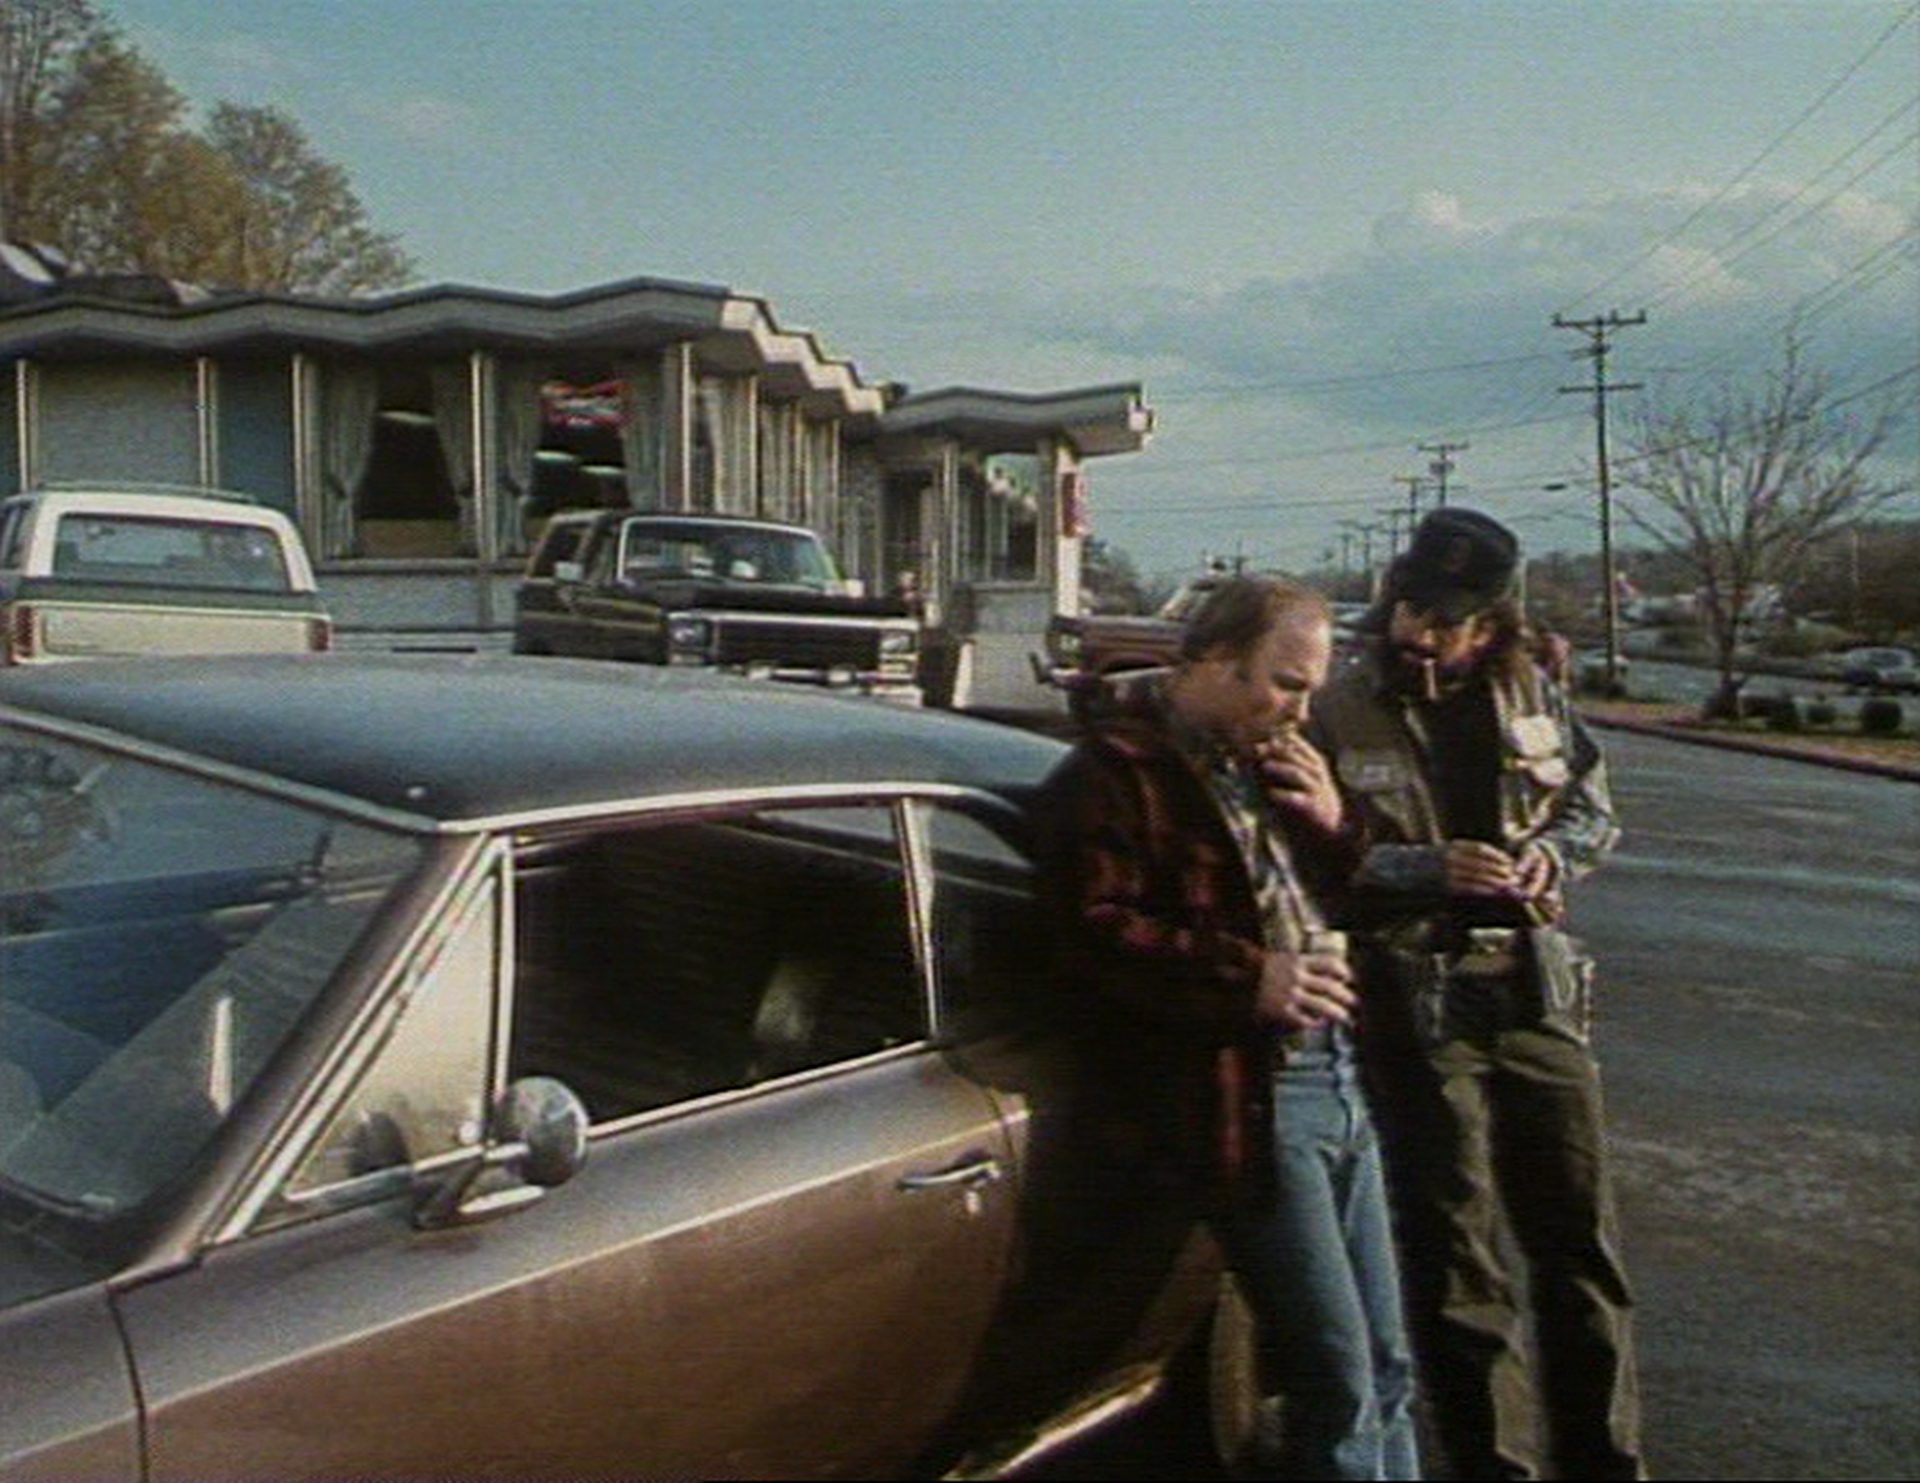 Ed Harris und Robert De Niro lehnen in proletarischem Look an einem Muscle car in trist-kleinstädtischer Umgebung.